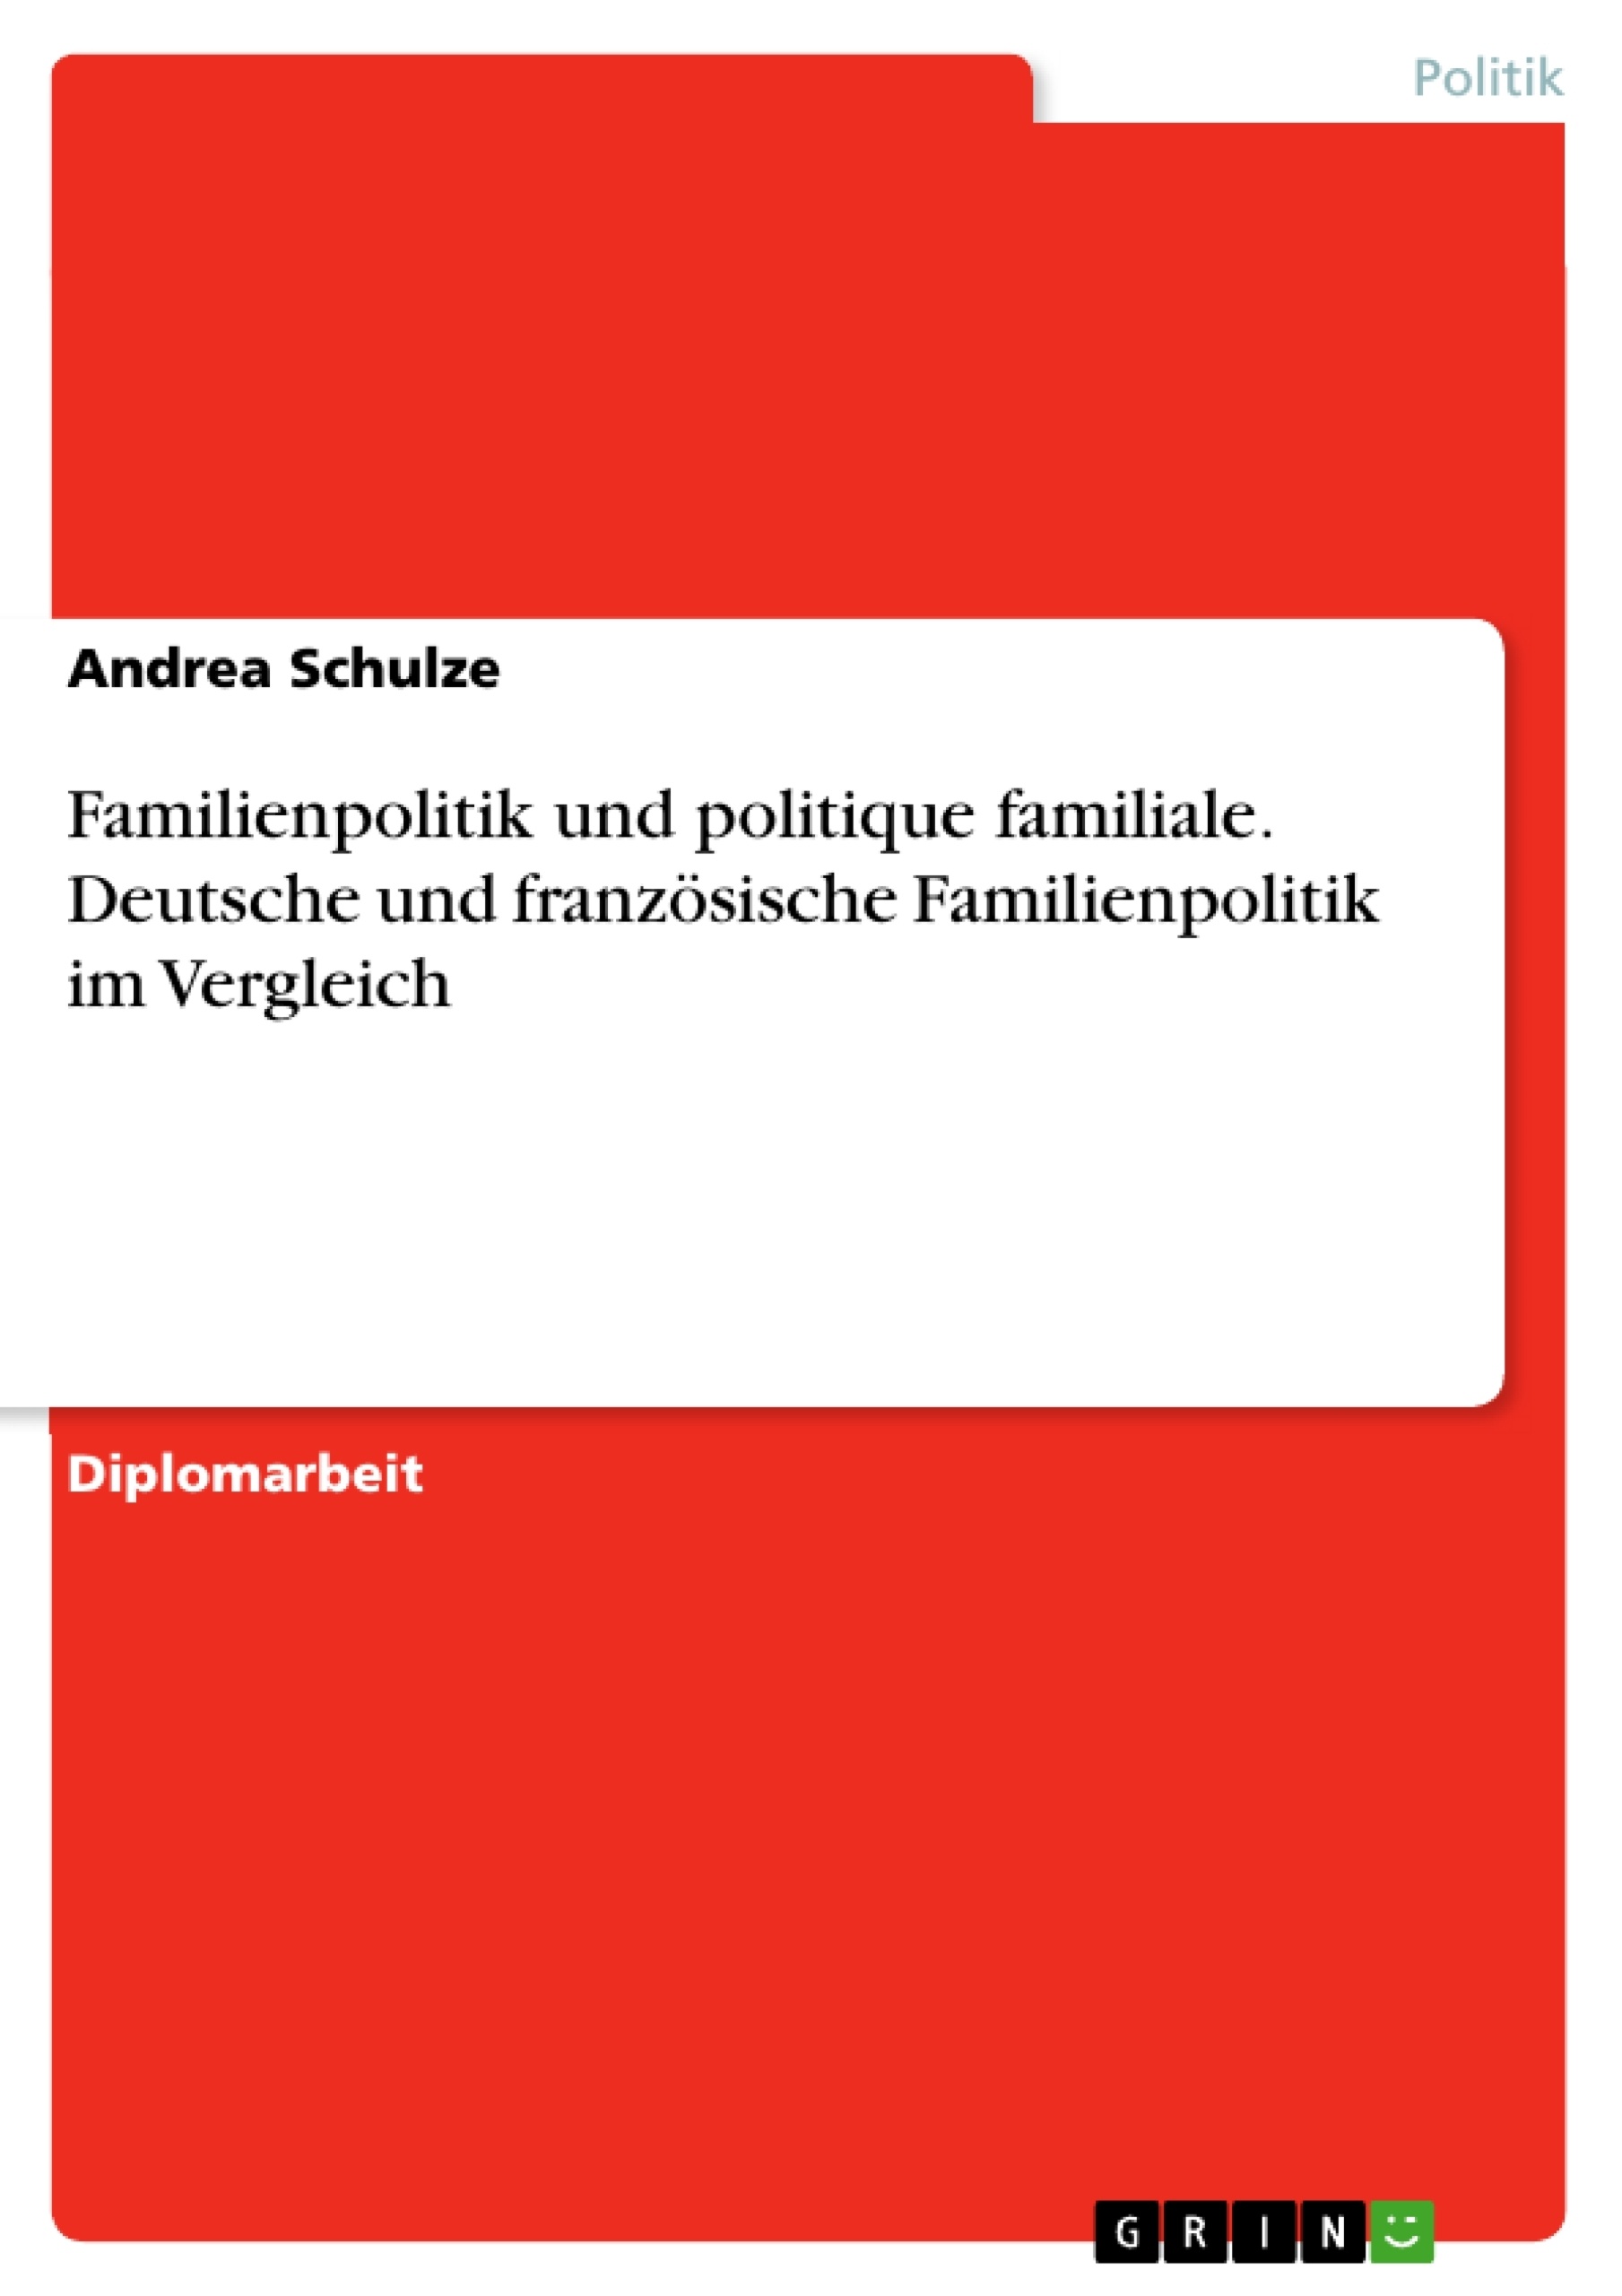 Titel: Familienpolitik und politique familiale. Deutsche und französische Familienpolitik im Vergleich